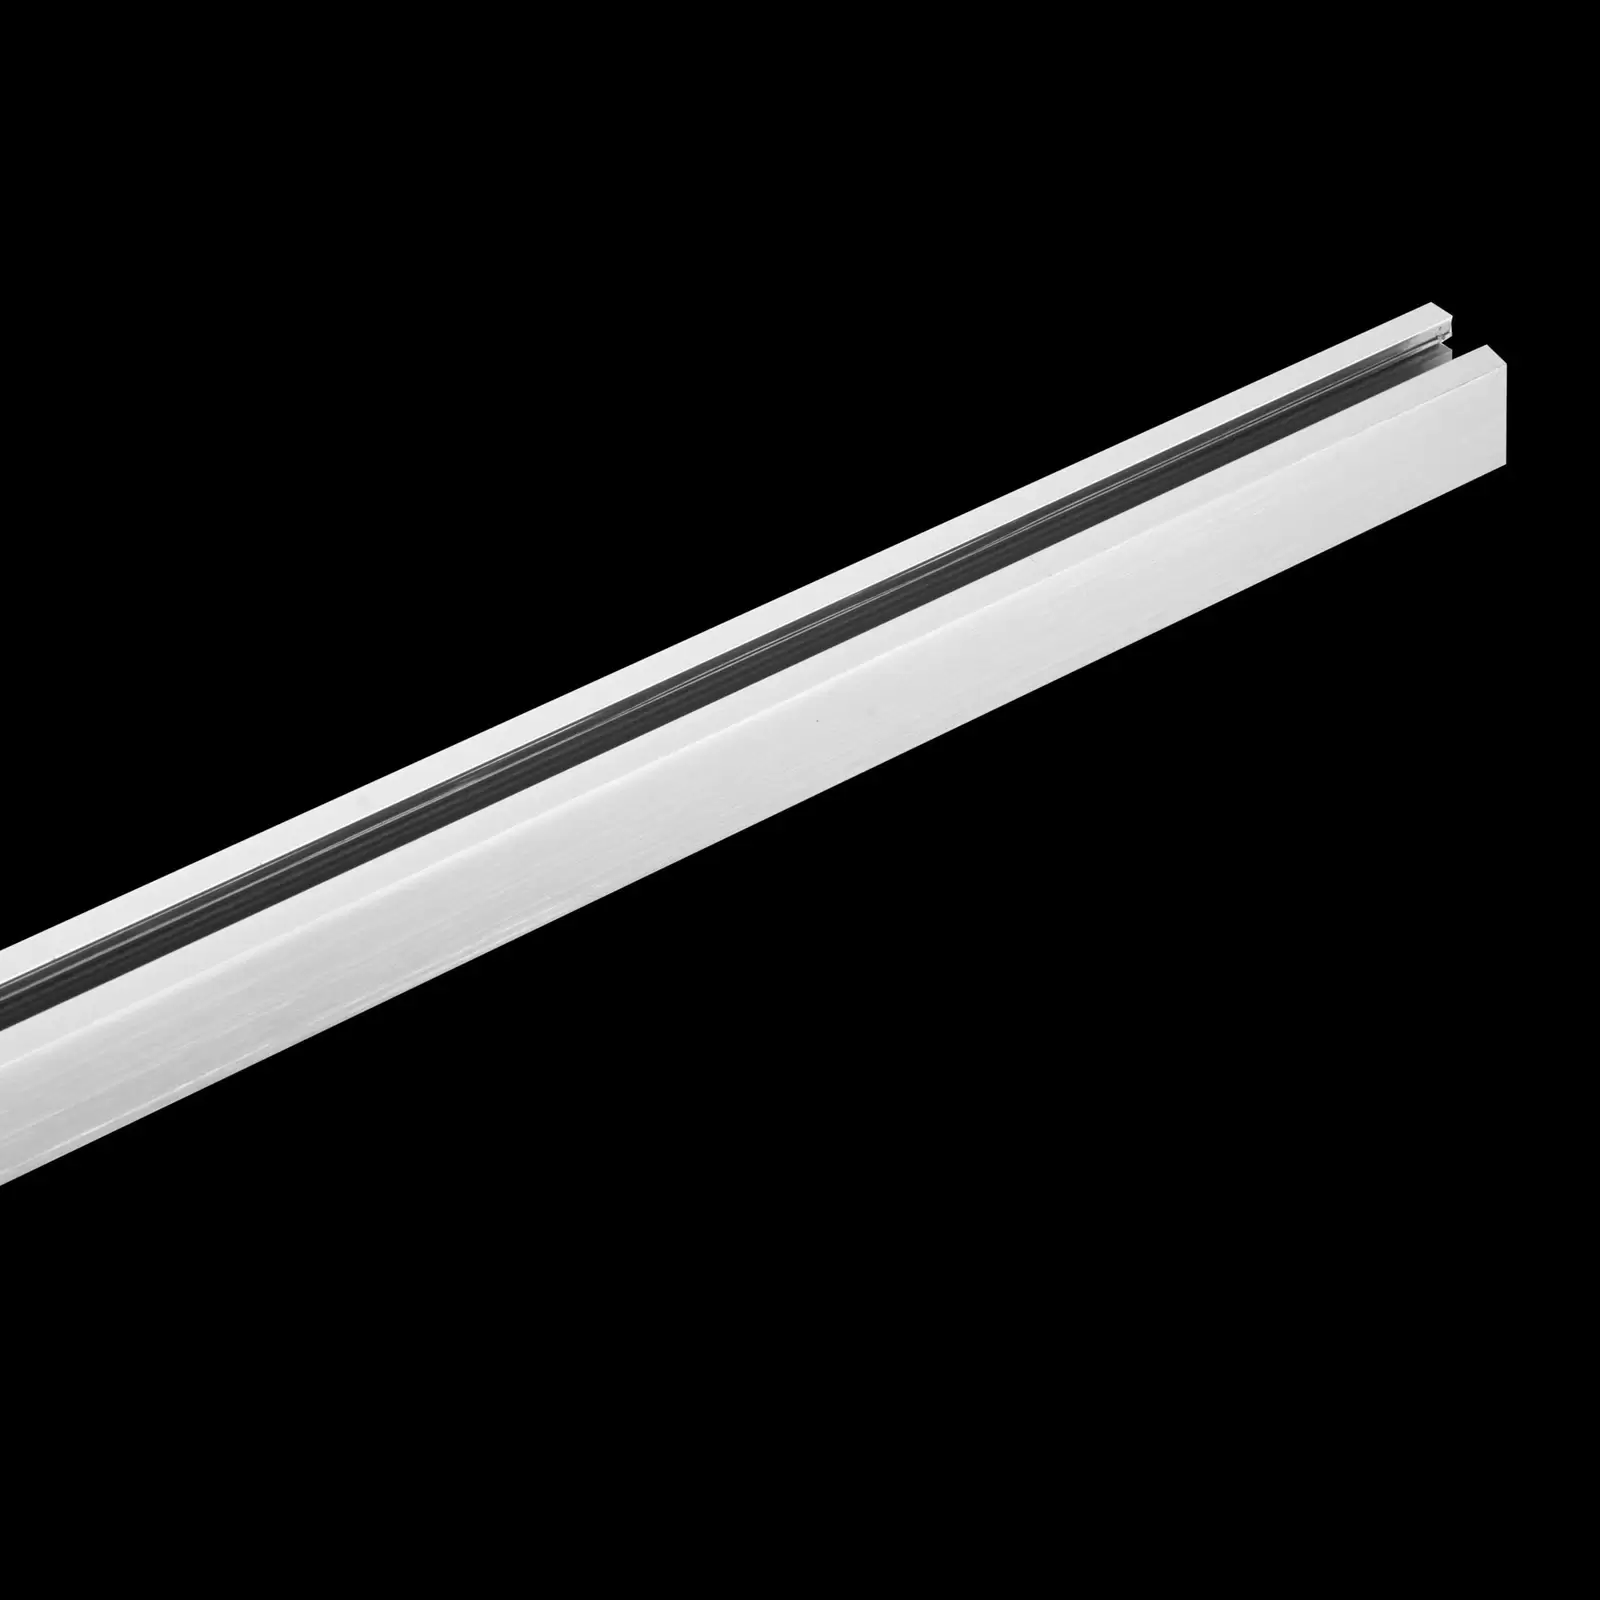 1-Phasen-Stromschiene 75 cm mit Anschlussblock und Endkappe - weiß